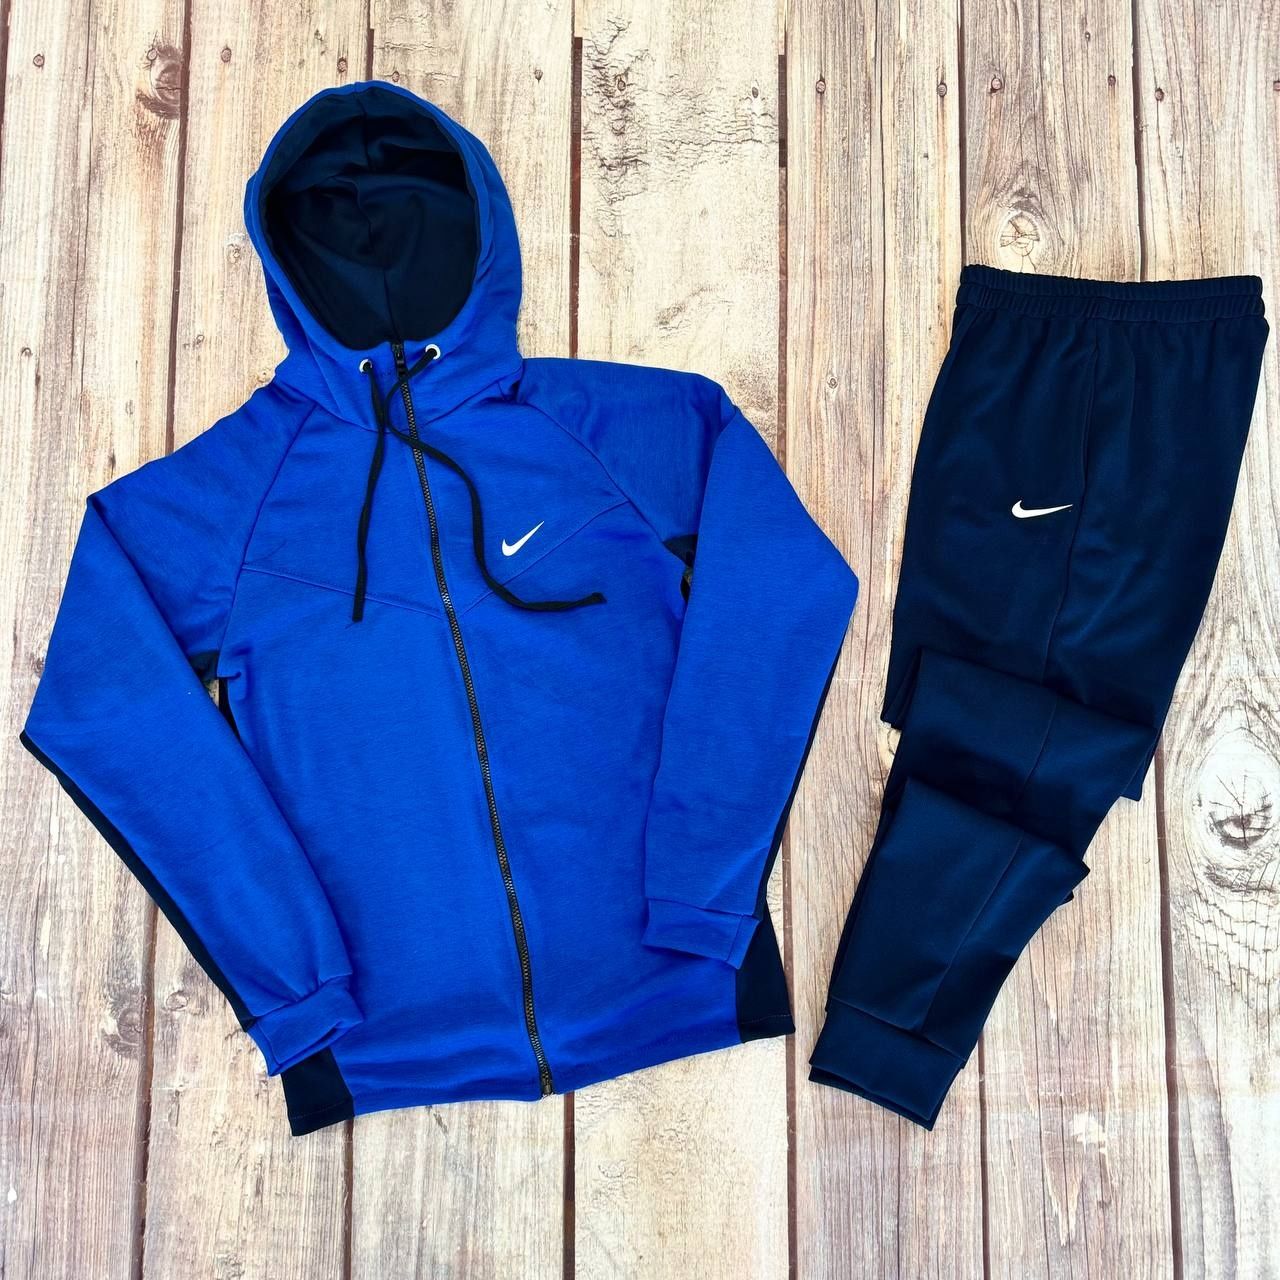 Чоловічий спортивний костюм Nike Dri-fit сірий ( кофта та штани )